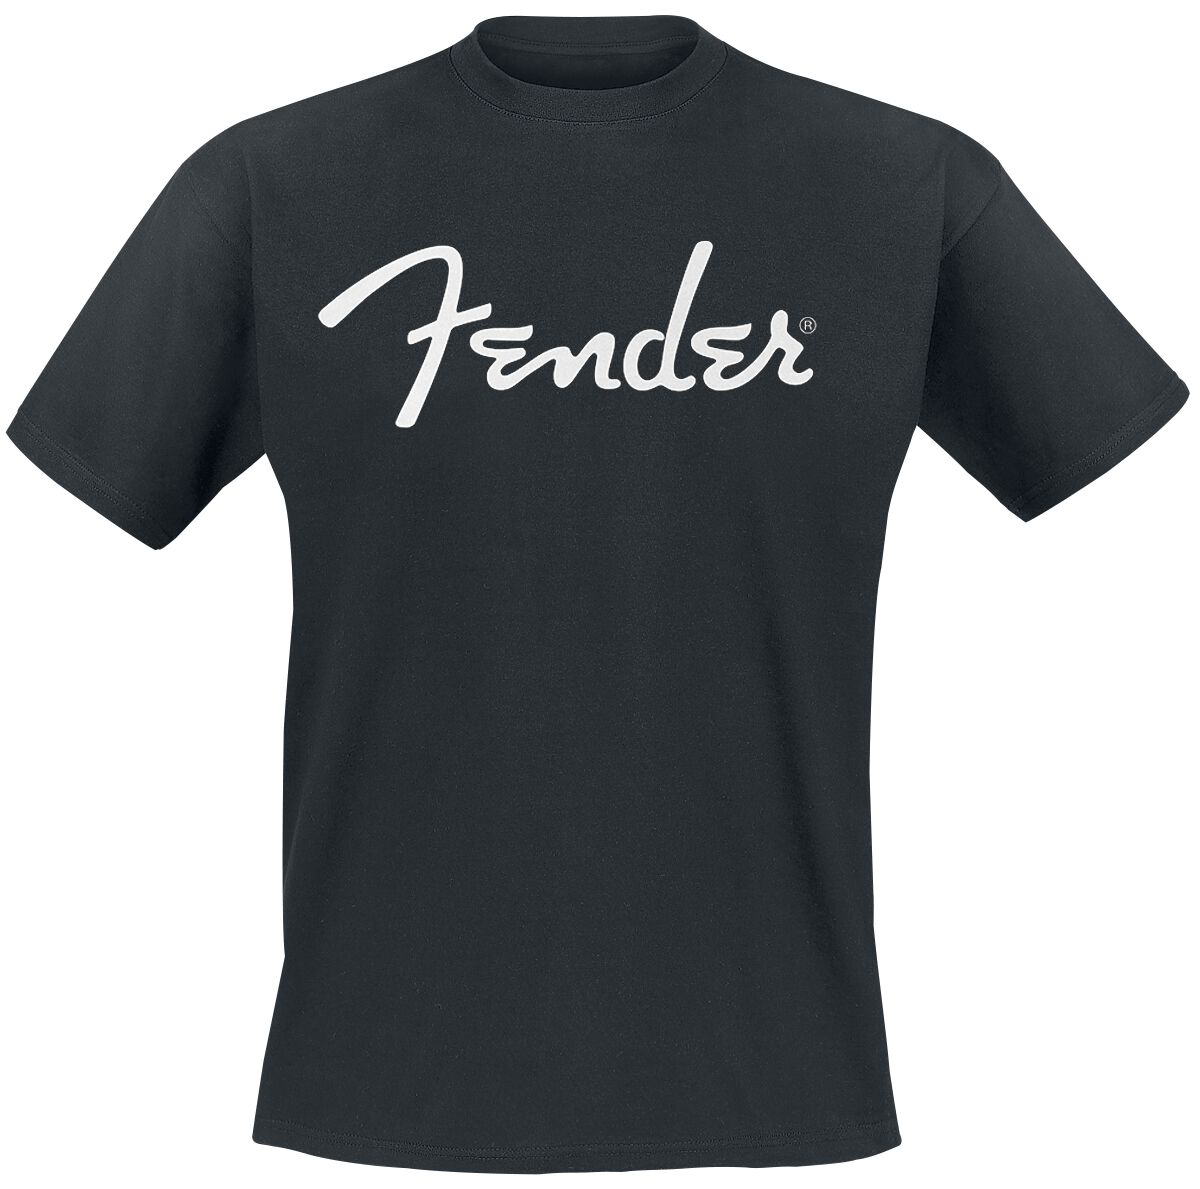 Fender T-Shirt - Classic Logo - S bis XXL - für Männer - Größe M - schwarz  - Lizenziertes Merchandise!